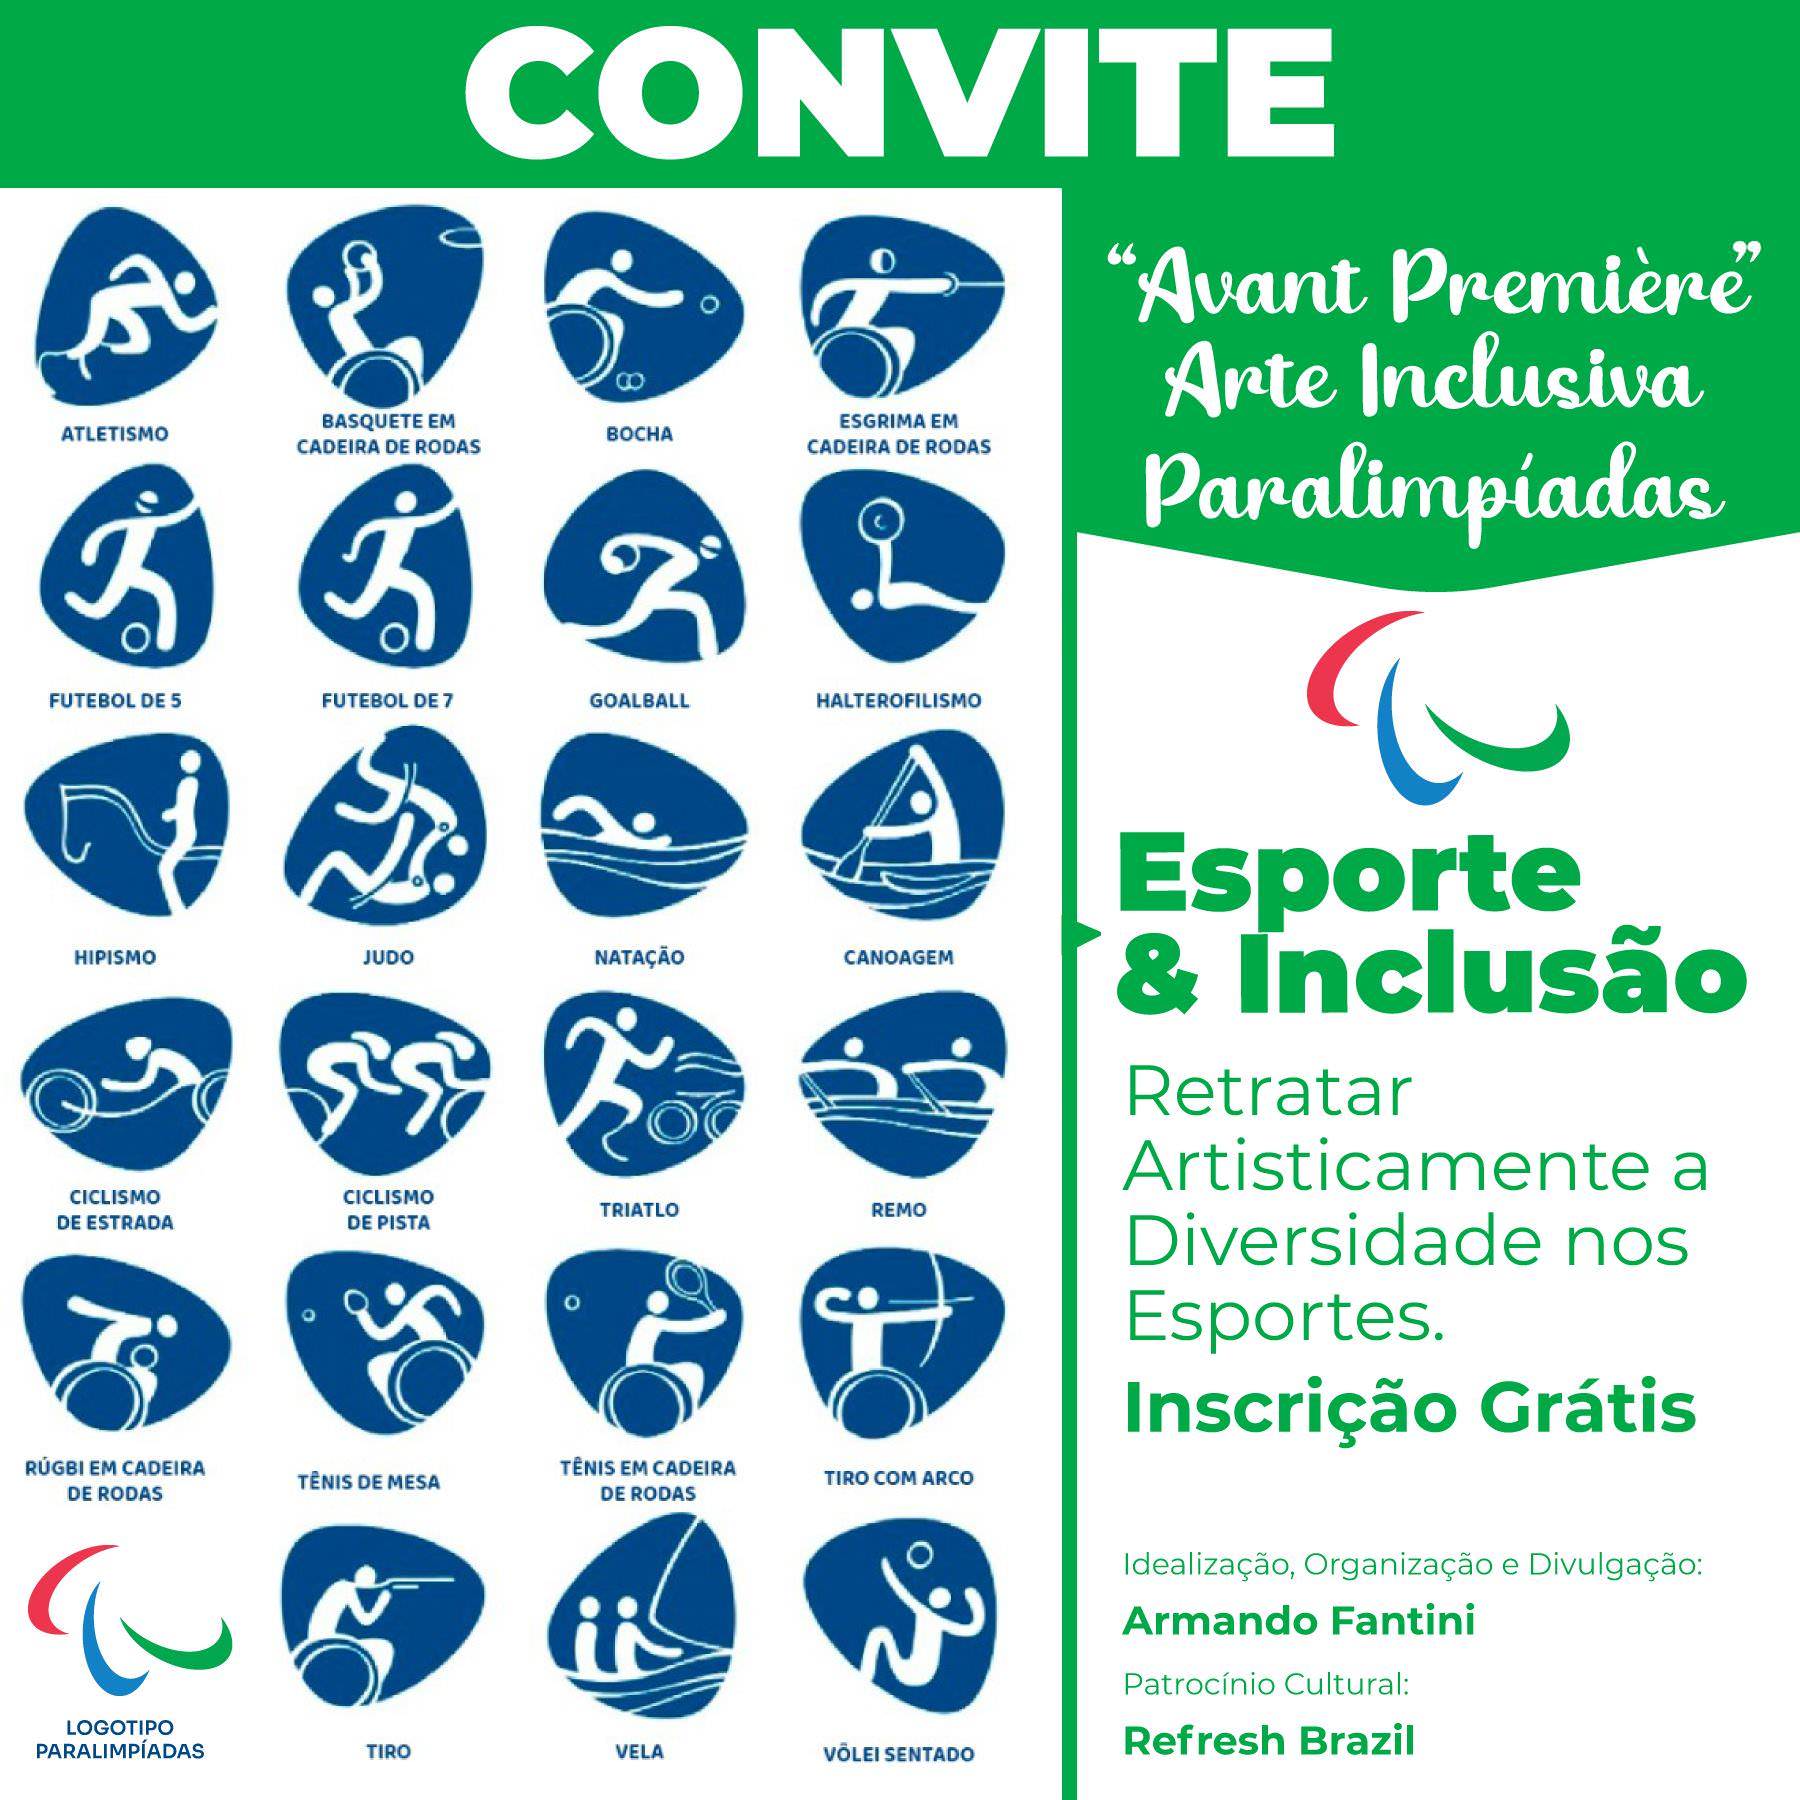 Exposição “Avant Première da Arte Inclusiva – Paralimpíadas”. Convite.